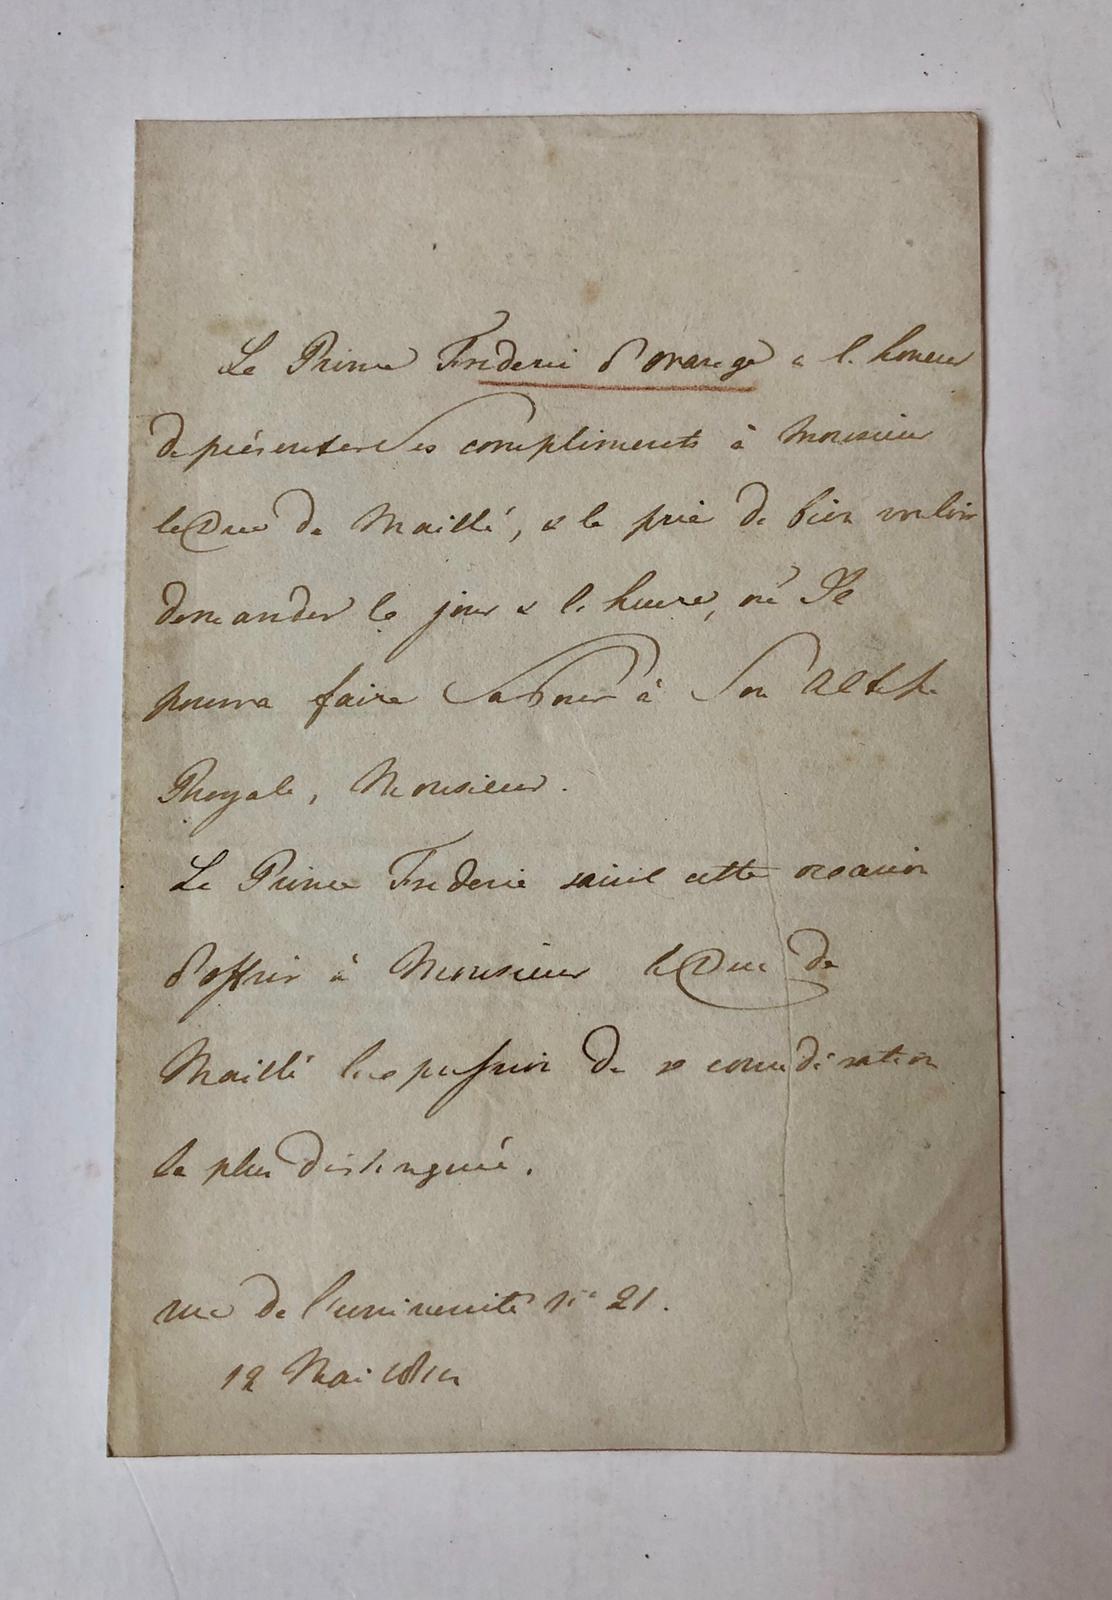  - FREDERIK, PRINS VAN ORANJE Briefje in het Frans, geschreven namens of door prins Frederik d'Orange, aan le Duc de Maill, gedateerd: Rue de l'Universit nr. 21, 12 Mai 1814. 8o, 1 p., zonder handtekening.